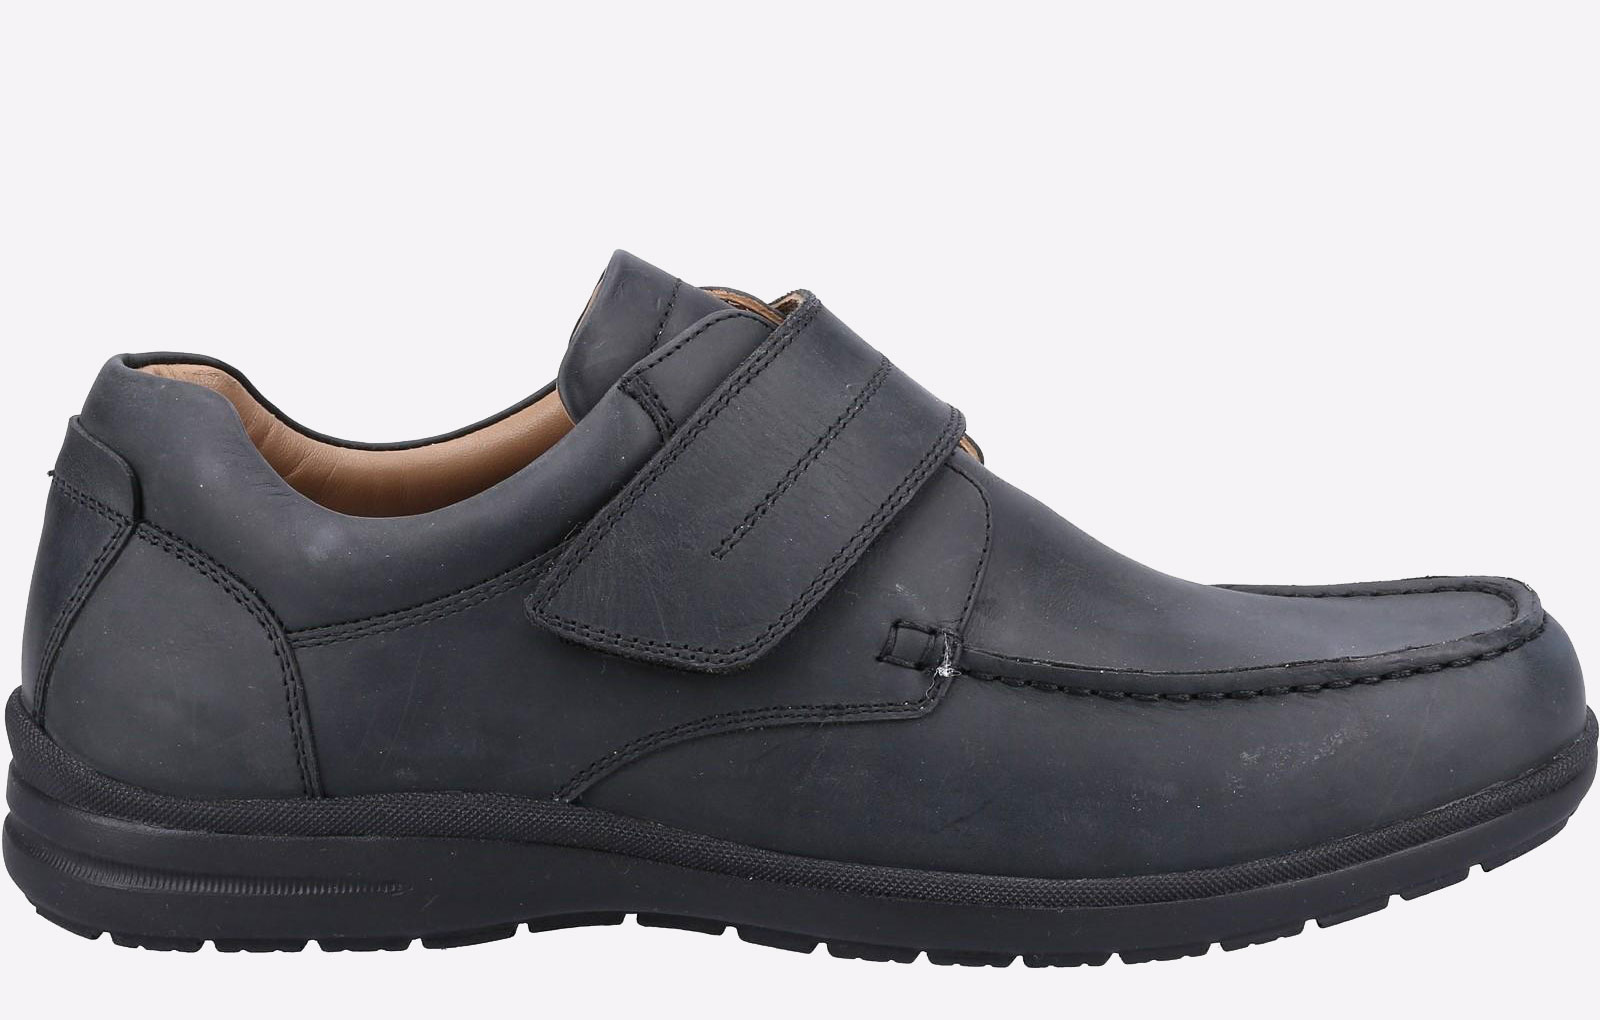 Fleet & Foster David Shoes Mens - GRD-36577-68182-13